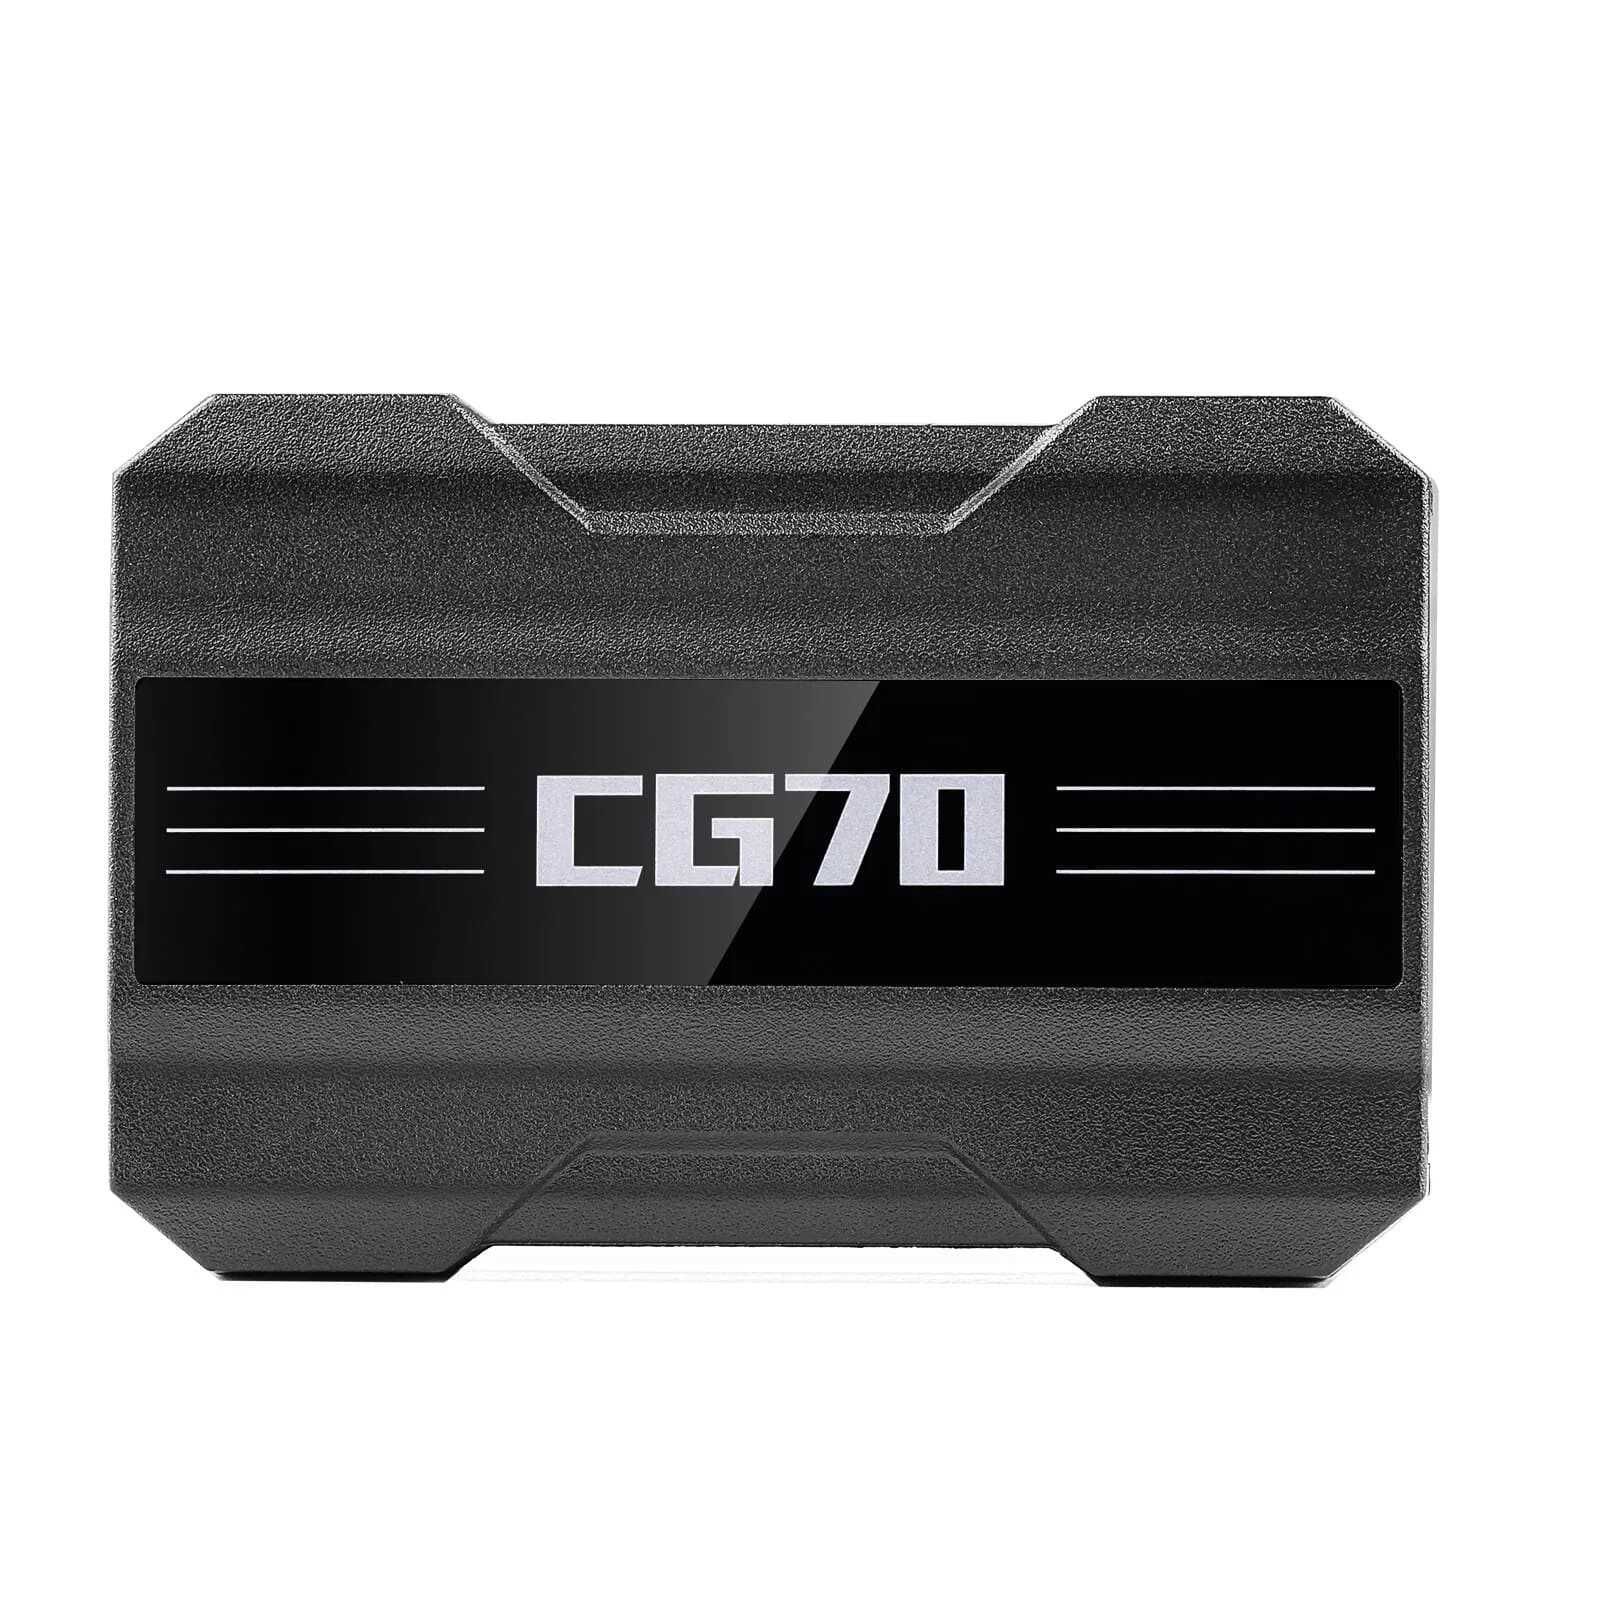 CGDI CG70 программатор для блоков SRS